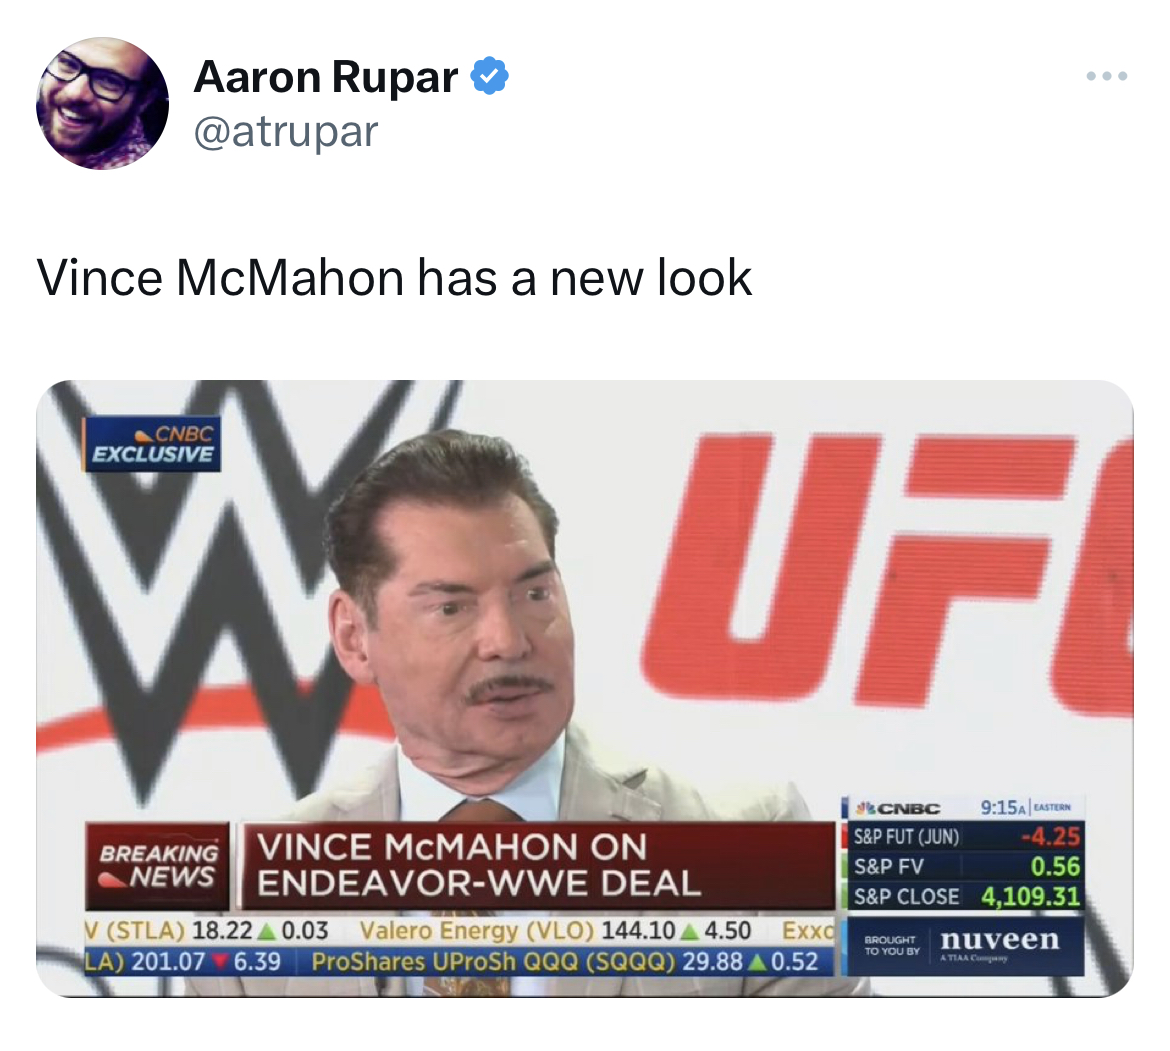 Vince McMahon Mustache memes - media - Aaron Rupar Vince McMahon has a new look Wuf Vince Mcmahon On EndeavorWwe Deal V Stla 18.22 0.03 Valero Energy Vlo 144.10 4.50 Exxc La 201.07 6.39 Pro UProSh Qqq Sqqq 29.88 A 0.52 Cnbc Exclusive Breaking News A Acnbc